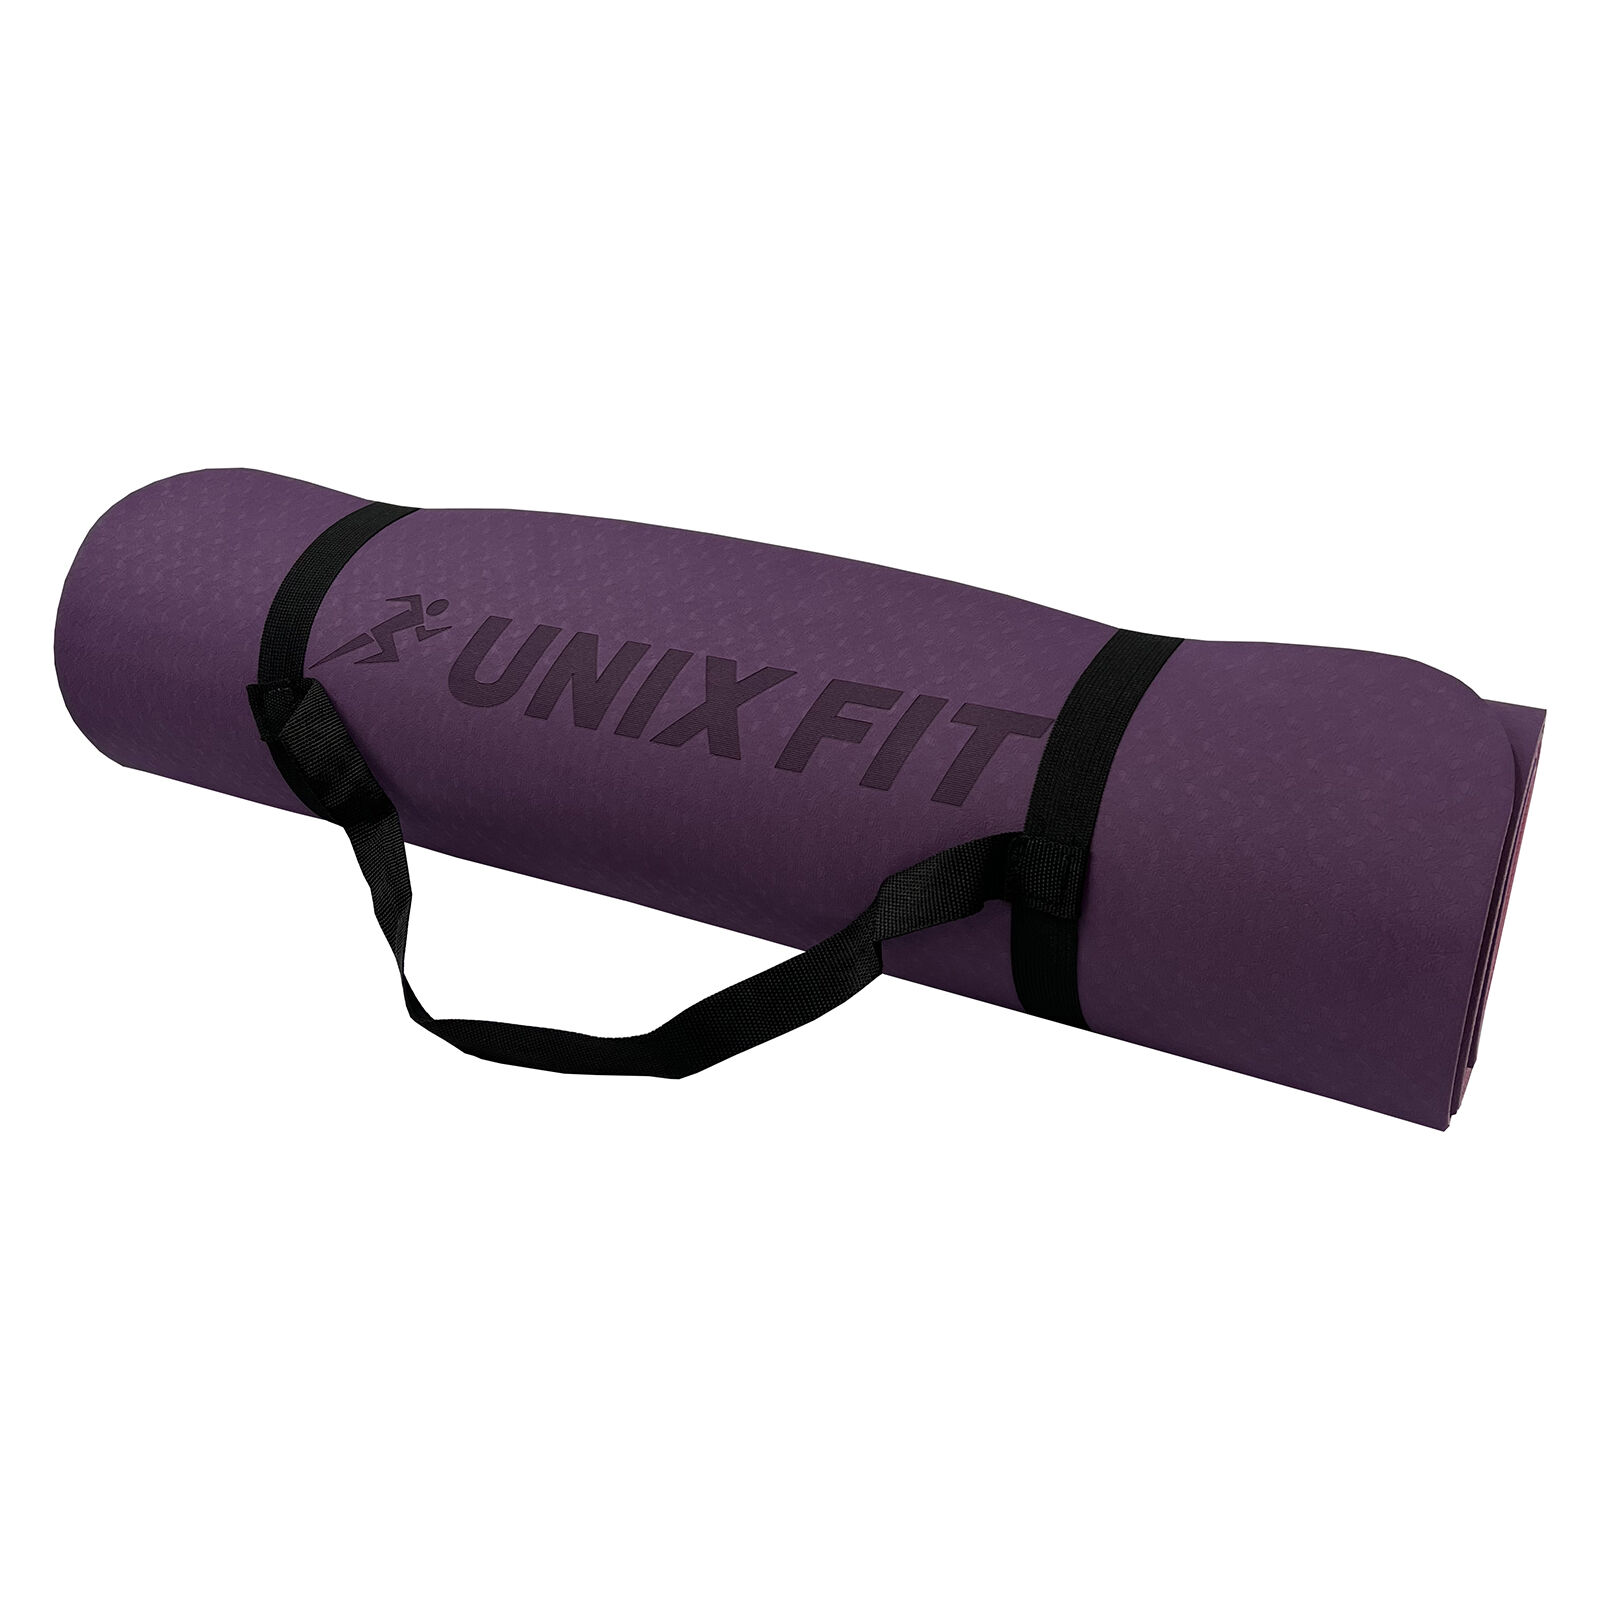 Коврик для йоги и фитнеса UNIX Fit двусторонний, 180 х 61 х 0,6 см, двуцветный, фиолетовый UNIX Fit™ Коврики для йоги и